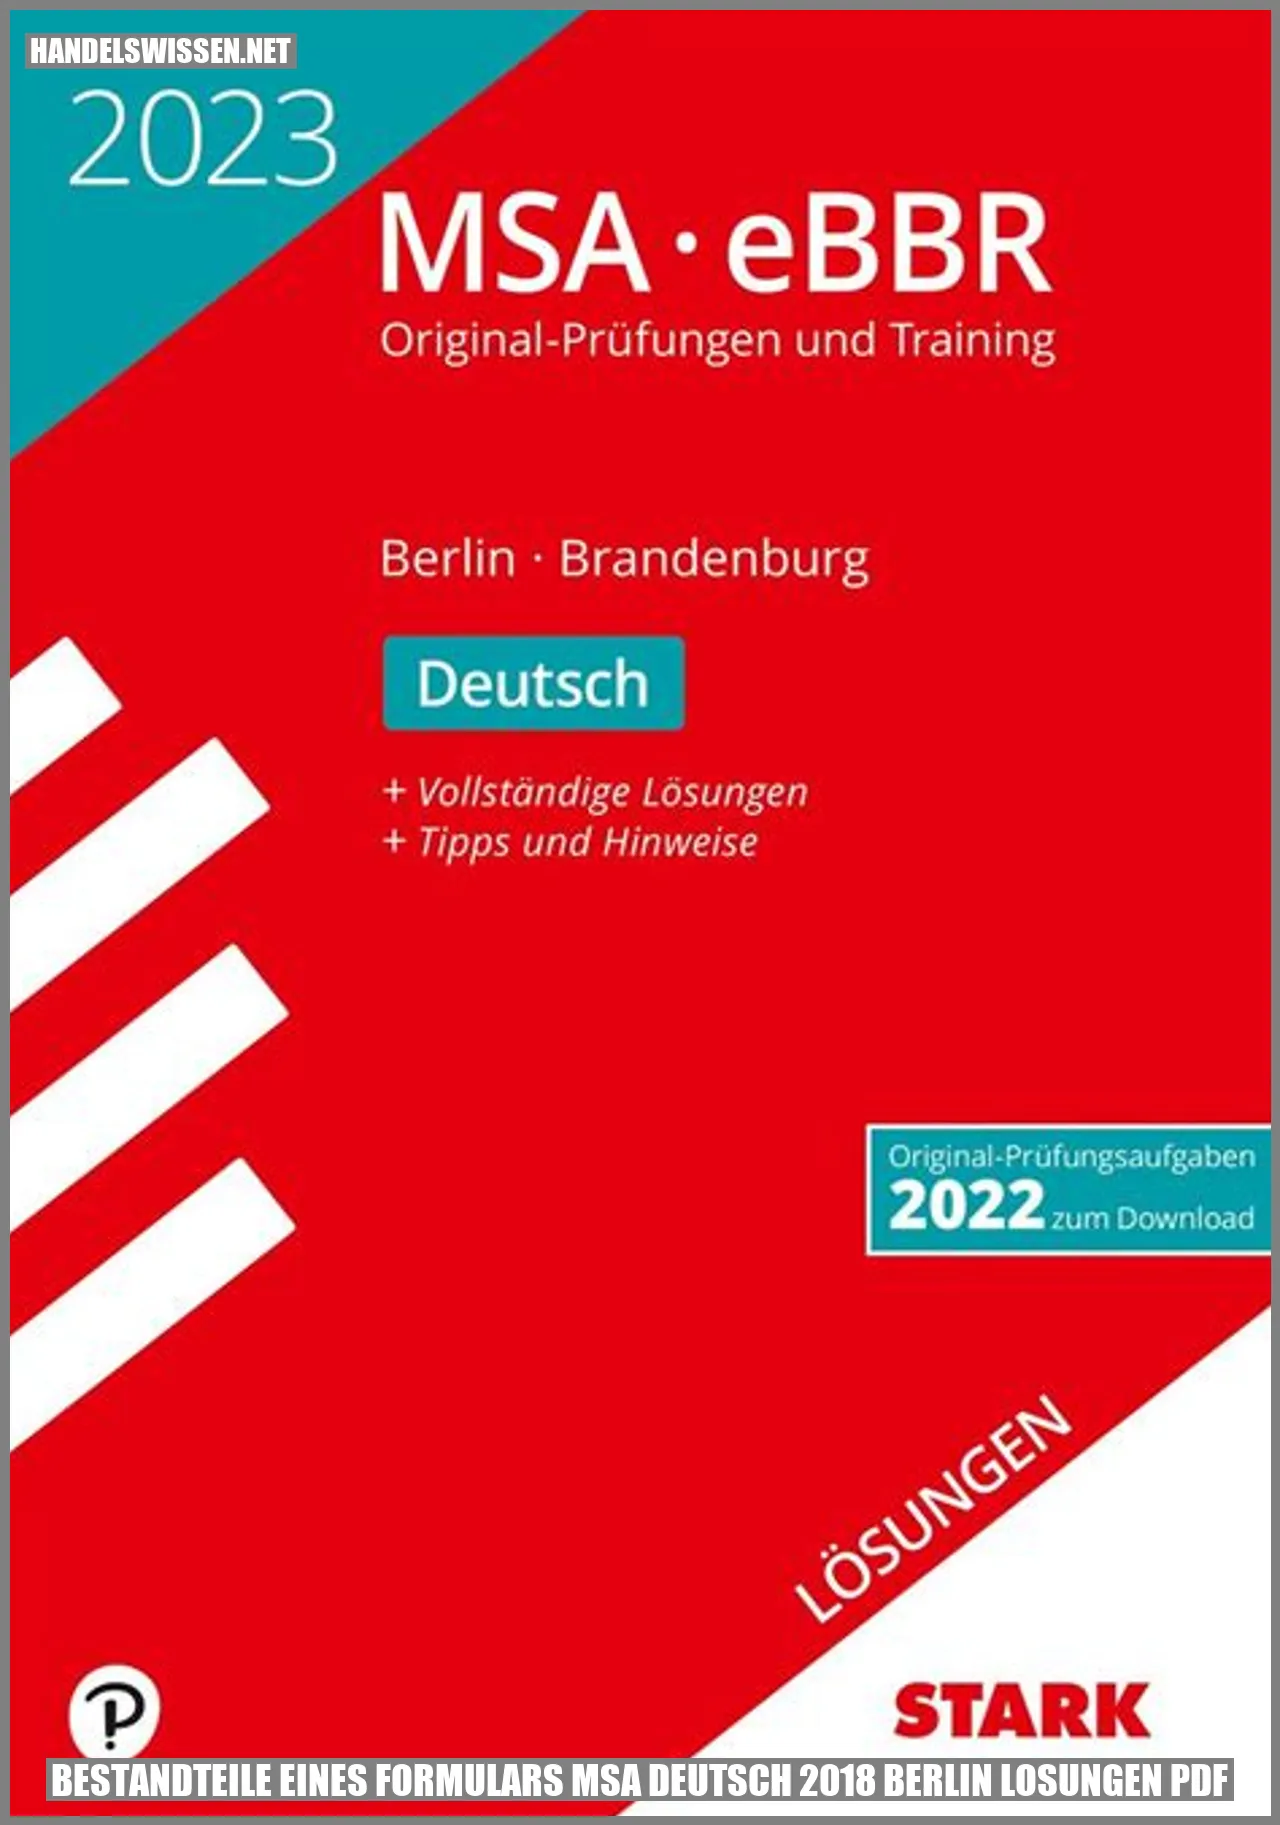 Bestandteile eines Formulars MSA Deutsch 2018 Berlin Lösungen PDF